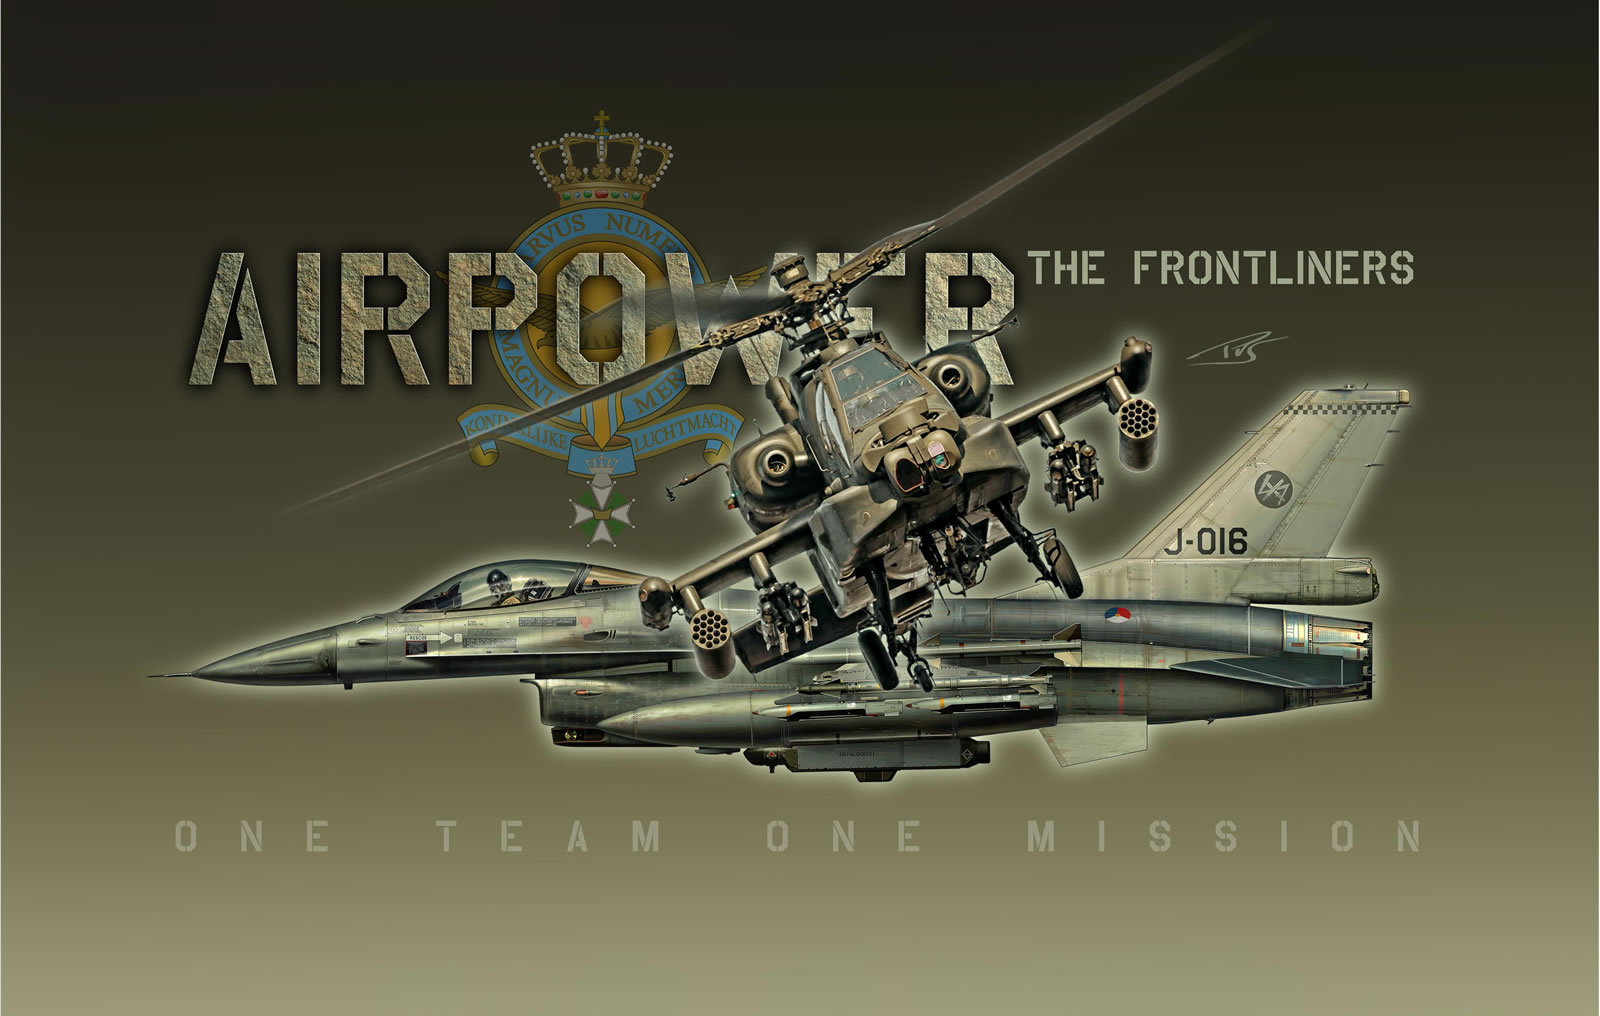 J-016 F-16 Profile